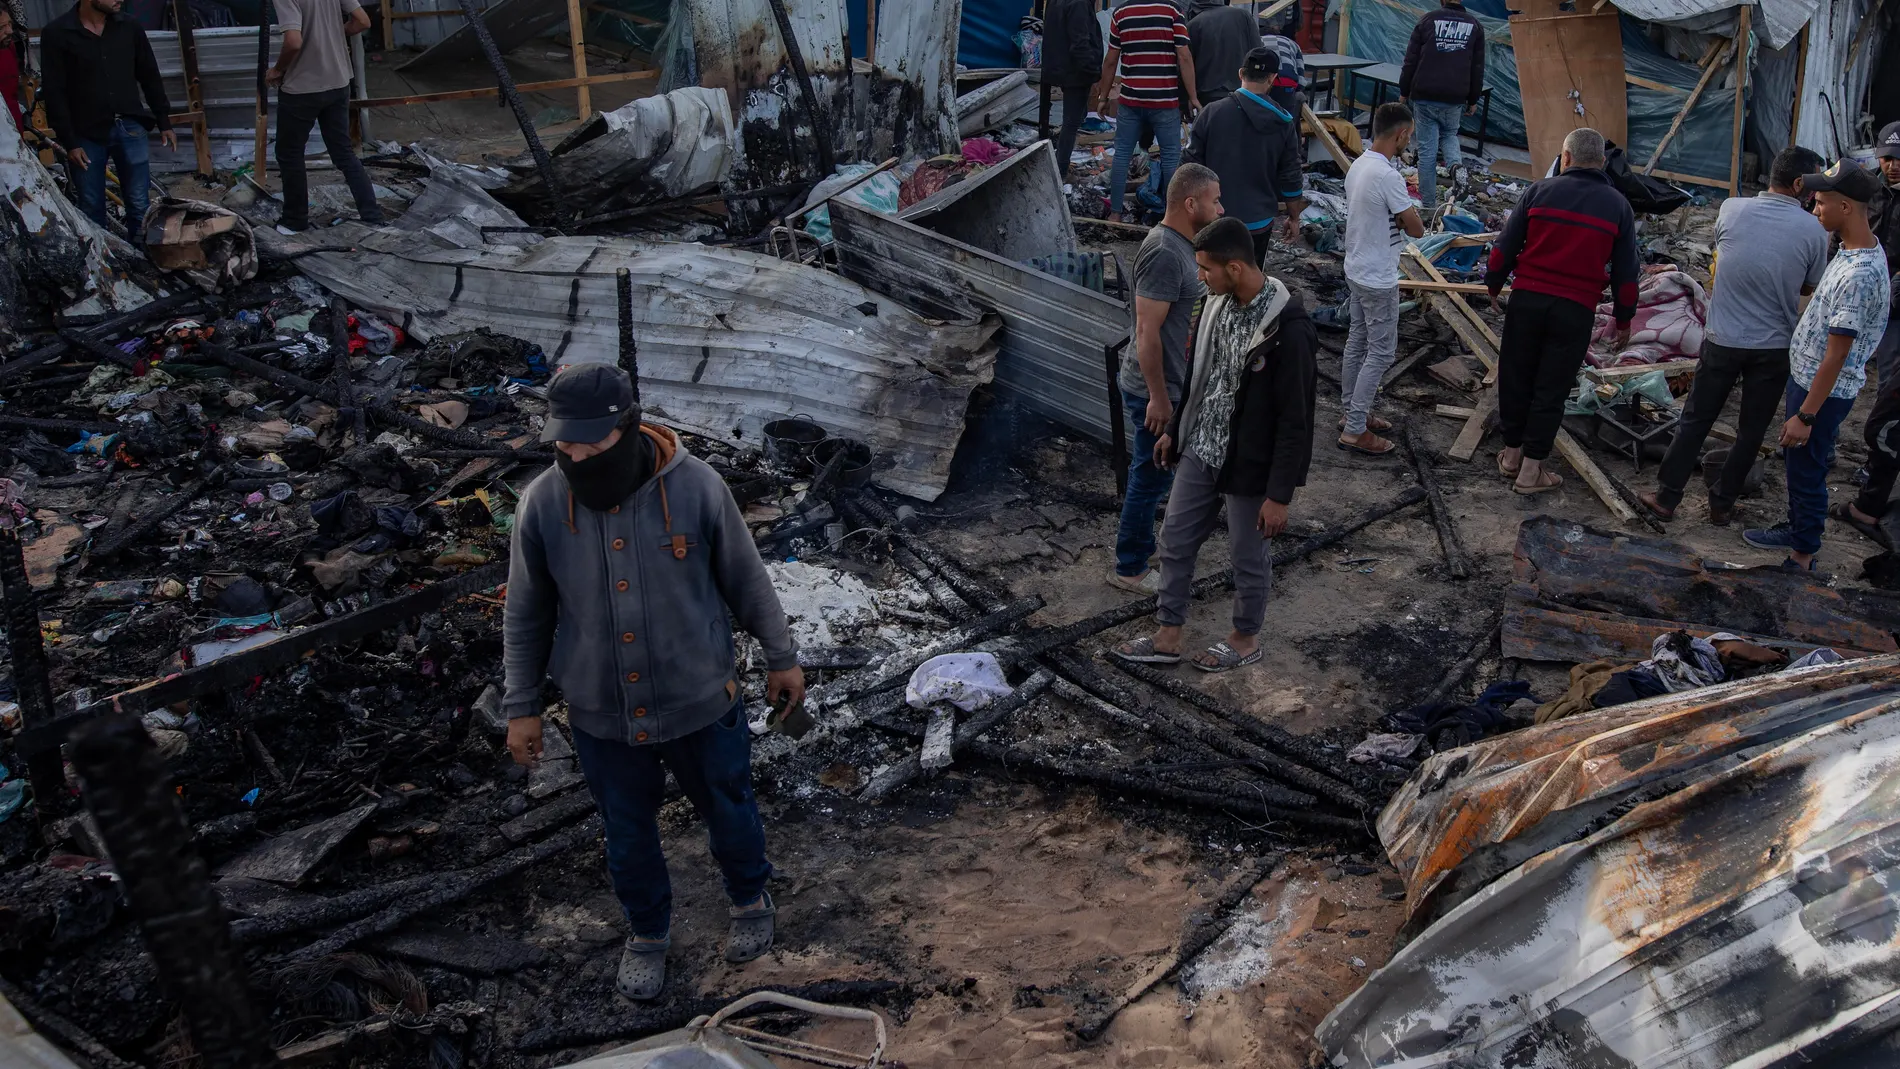 Palestinos revisando los daños tras el ataque israelí contra un campamento de desplazados en Rafah, en el sur de la Franja de Gaza, que ha dejado al menos 45 muertos según las autoridades gazatíes.